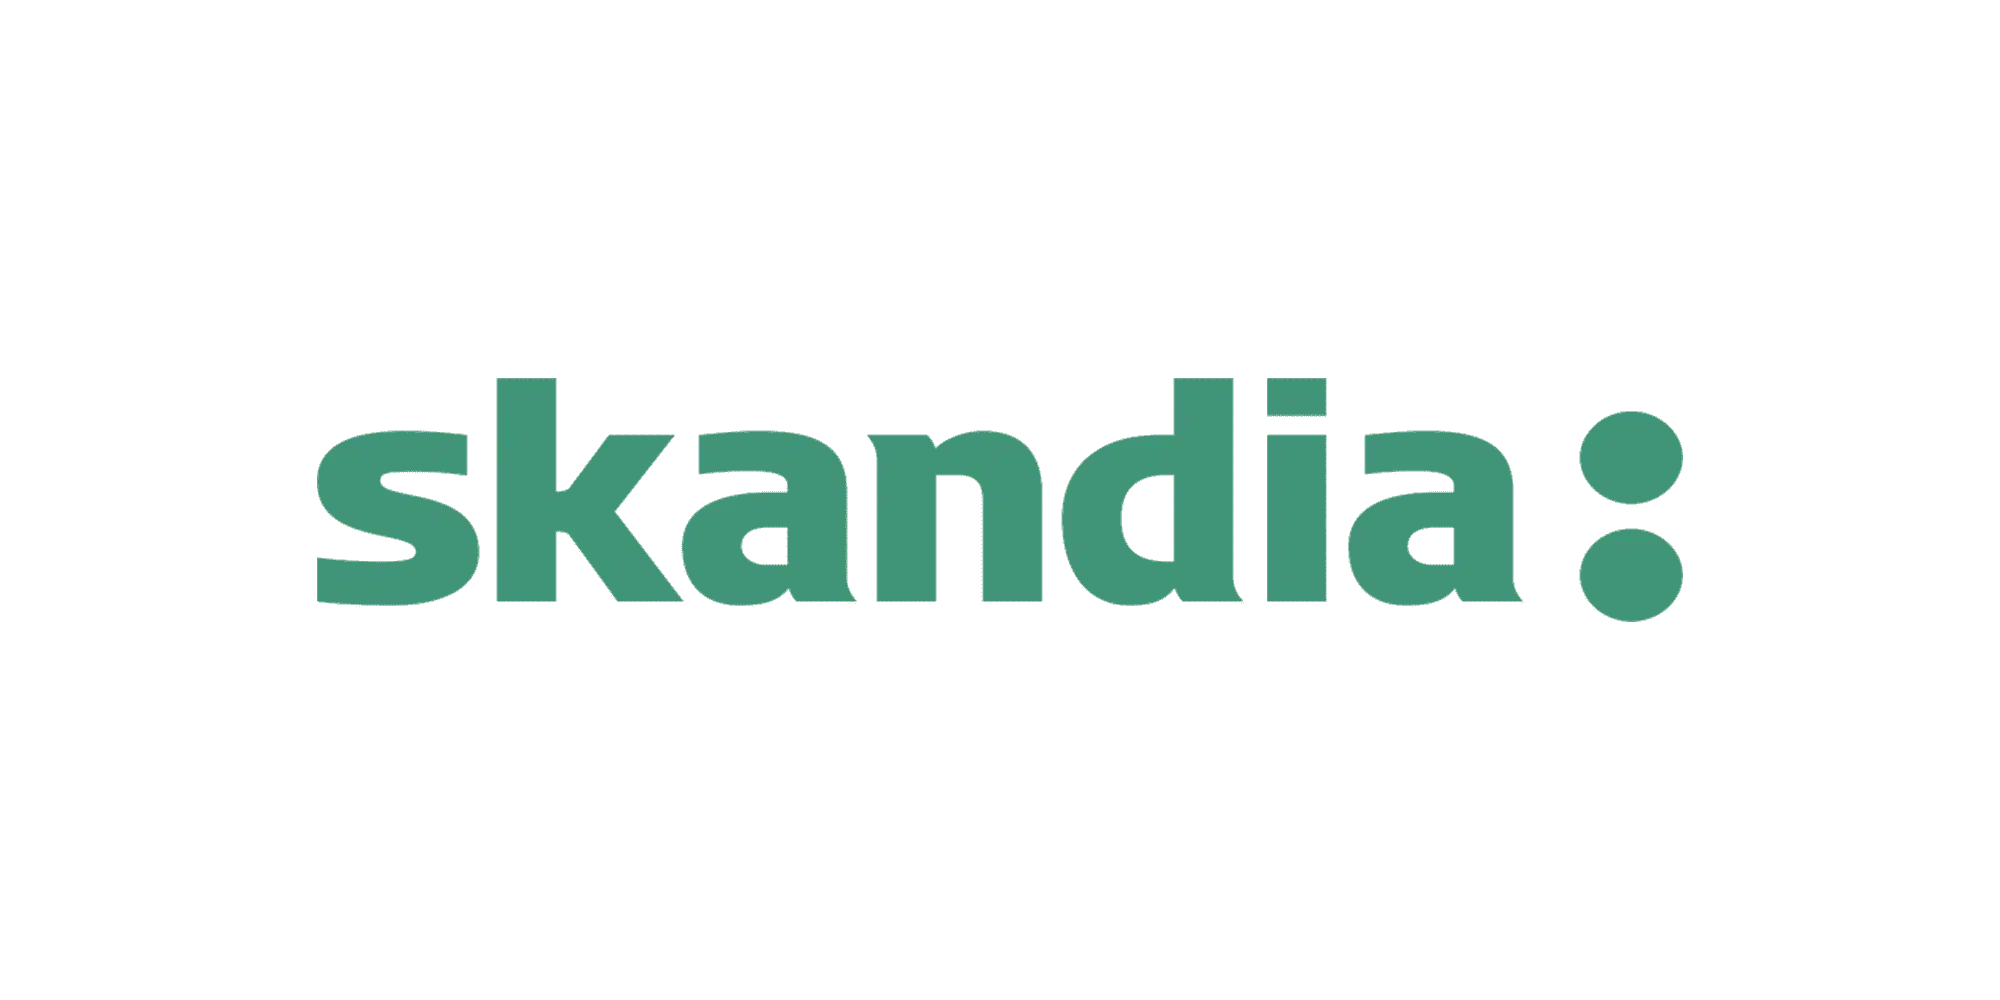 skandia-forsakring-logotyp